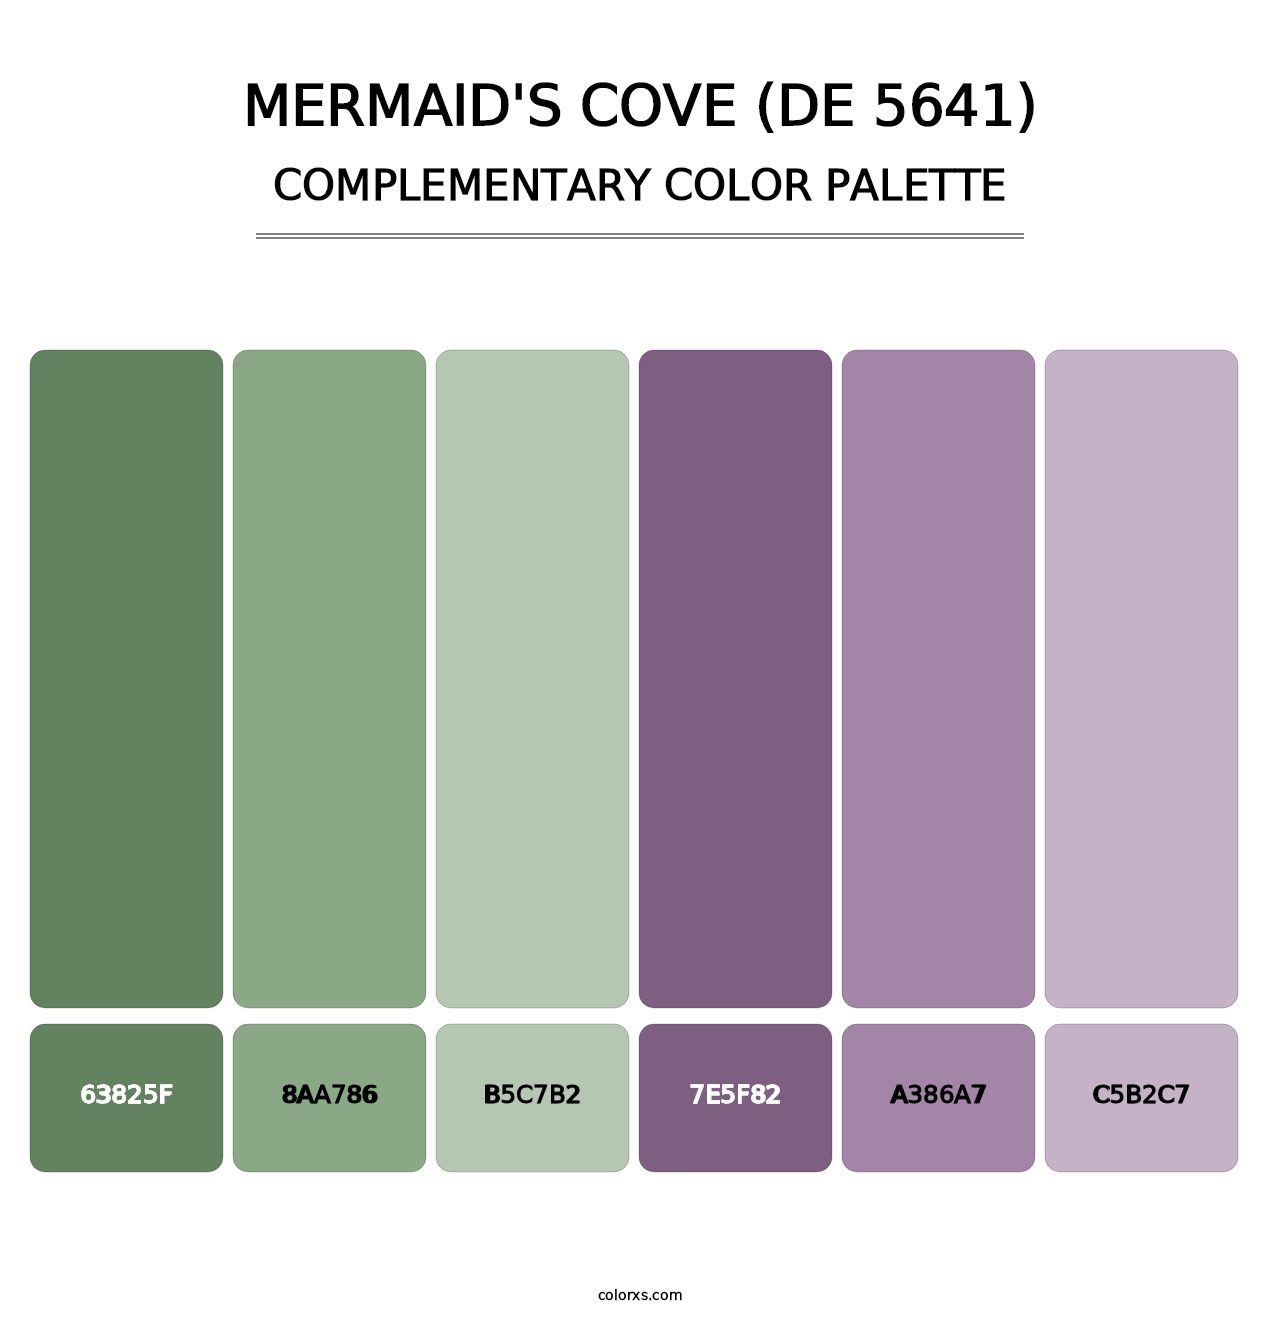 Mermaid's Cove (DE 5641) - Complementary Color Palette